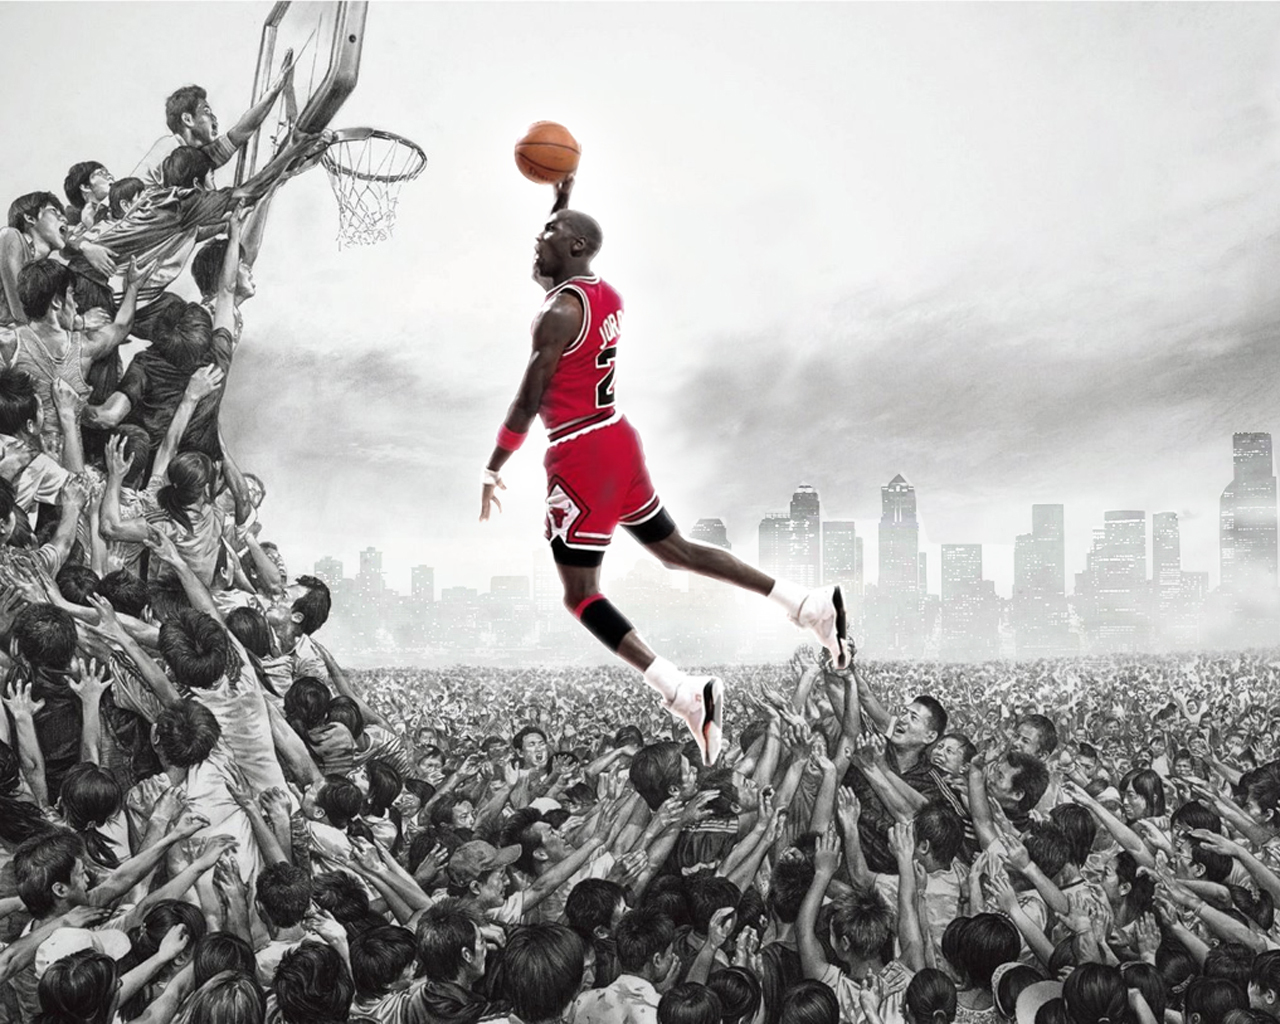 Michael Jordan Wallpaper Image